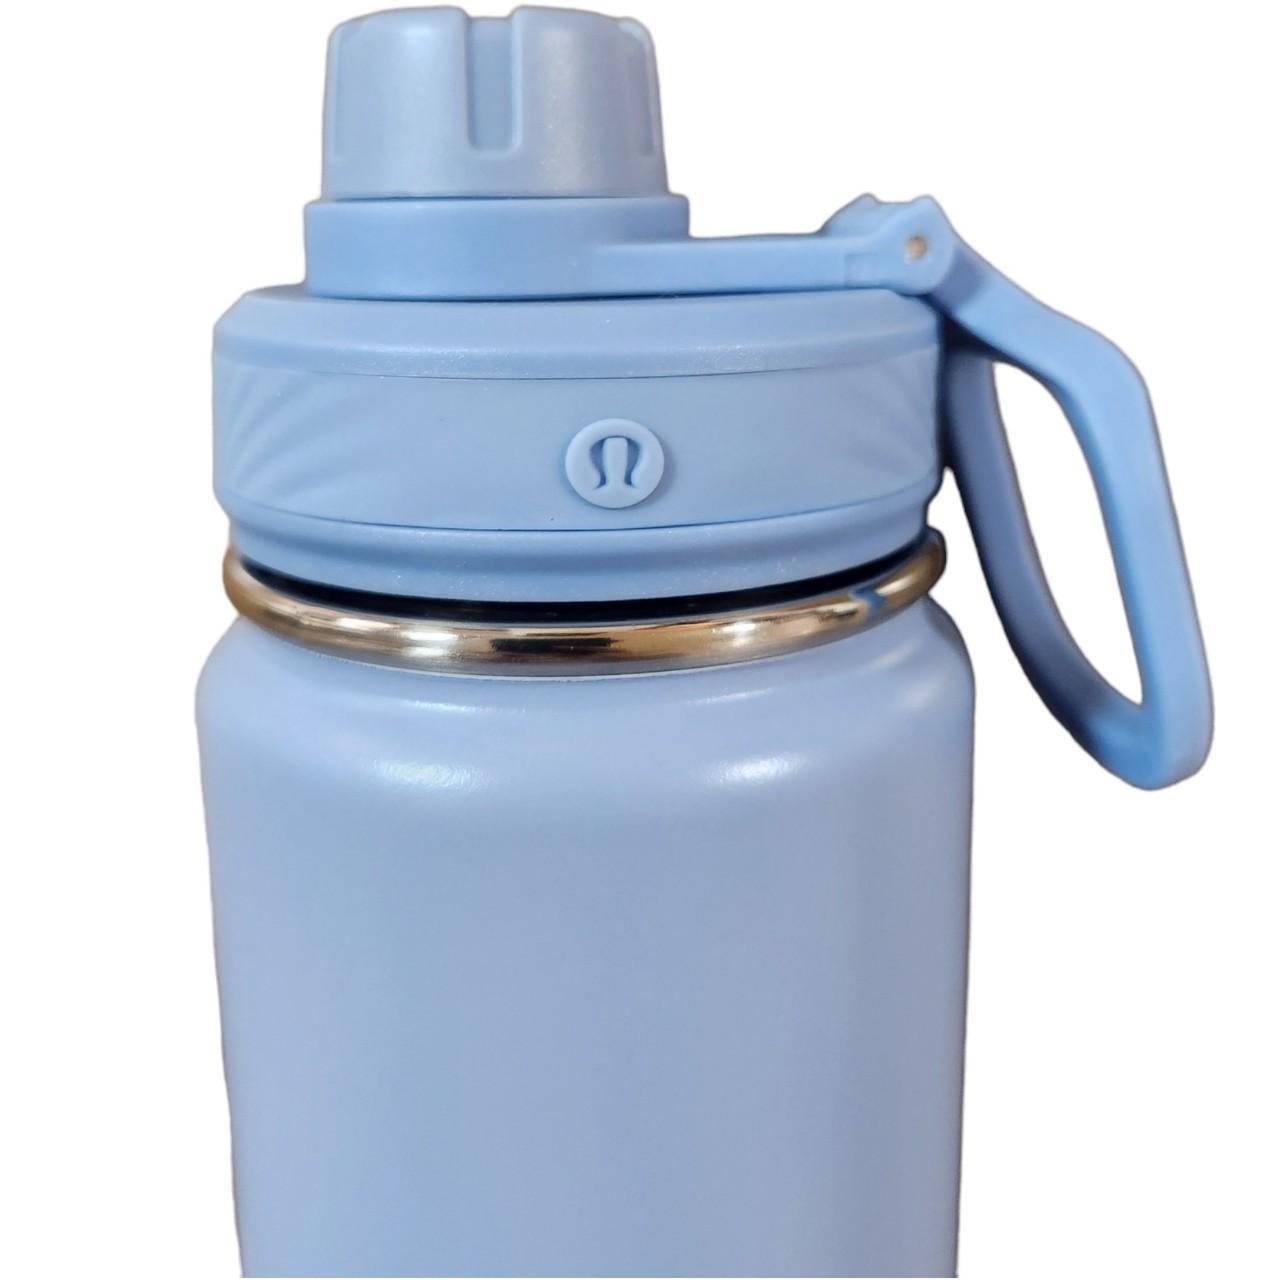 lululemon water bottle - Depop